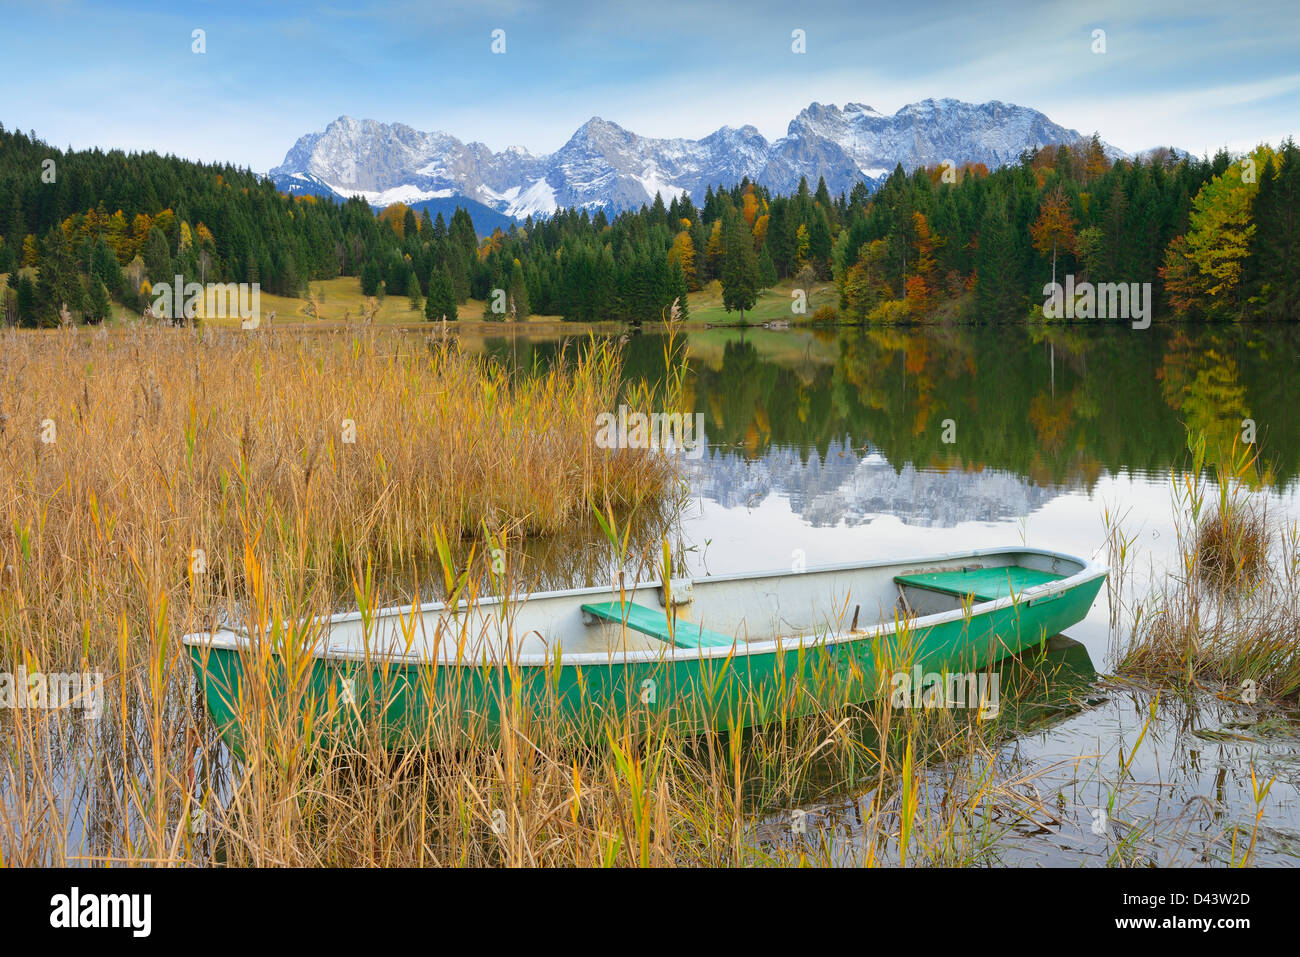 Bateau sur le lac avec Geroldsee Karwendel, près de Garmisch-Partenkirchen, Werdenfelser Land, Upper Bavaria, Bavaria, Germany Banque D'Images